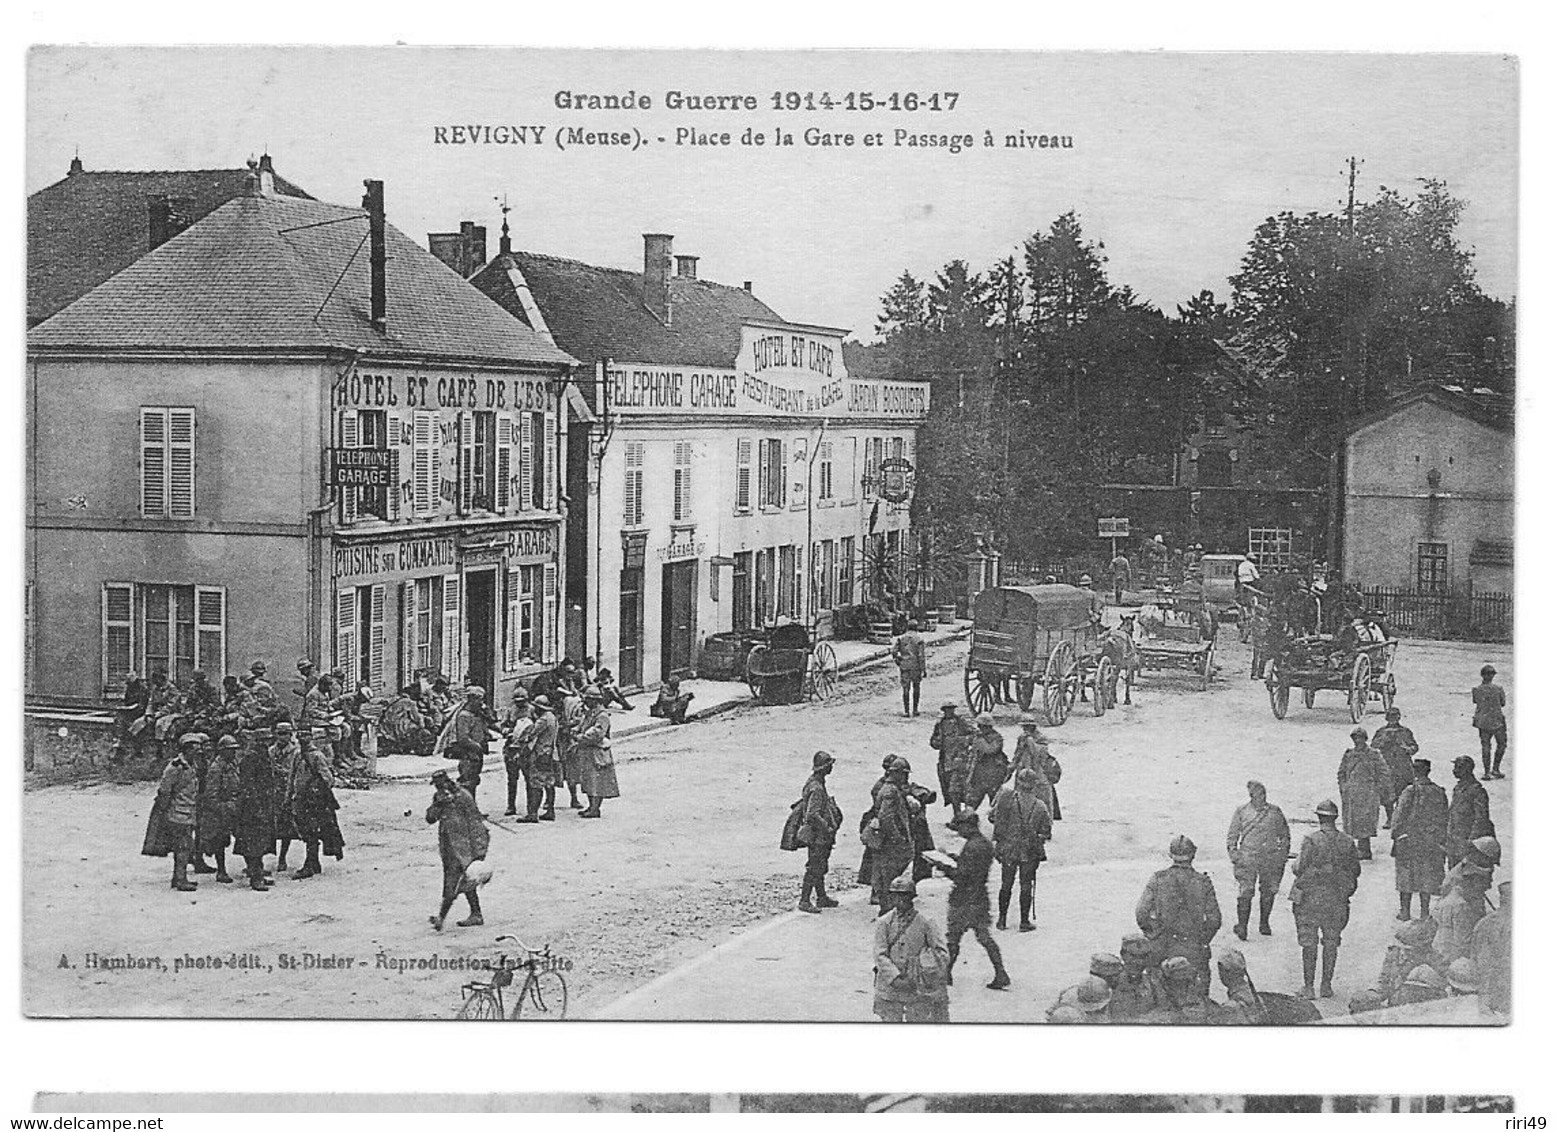 Cpa, Commerce, MEUSE, REVIGNY, Grande Guerre 1914, Place De La Gare Et Passage à Niveau, Charrette, Café, Restaurant, - Cafés